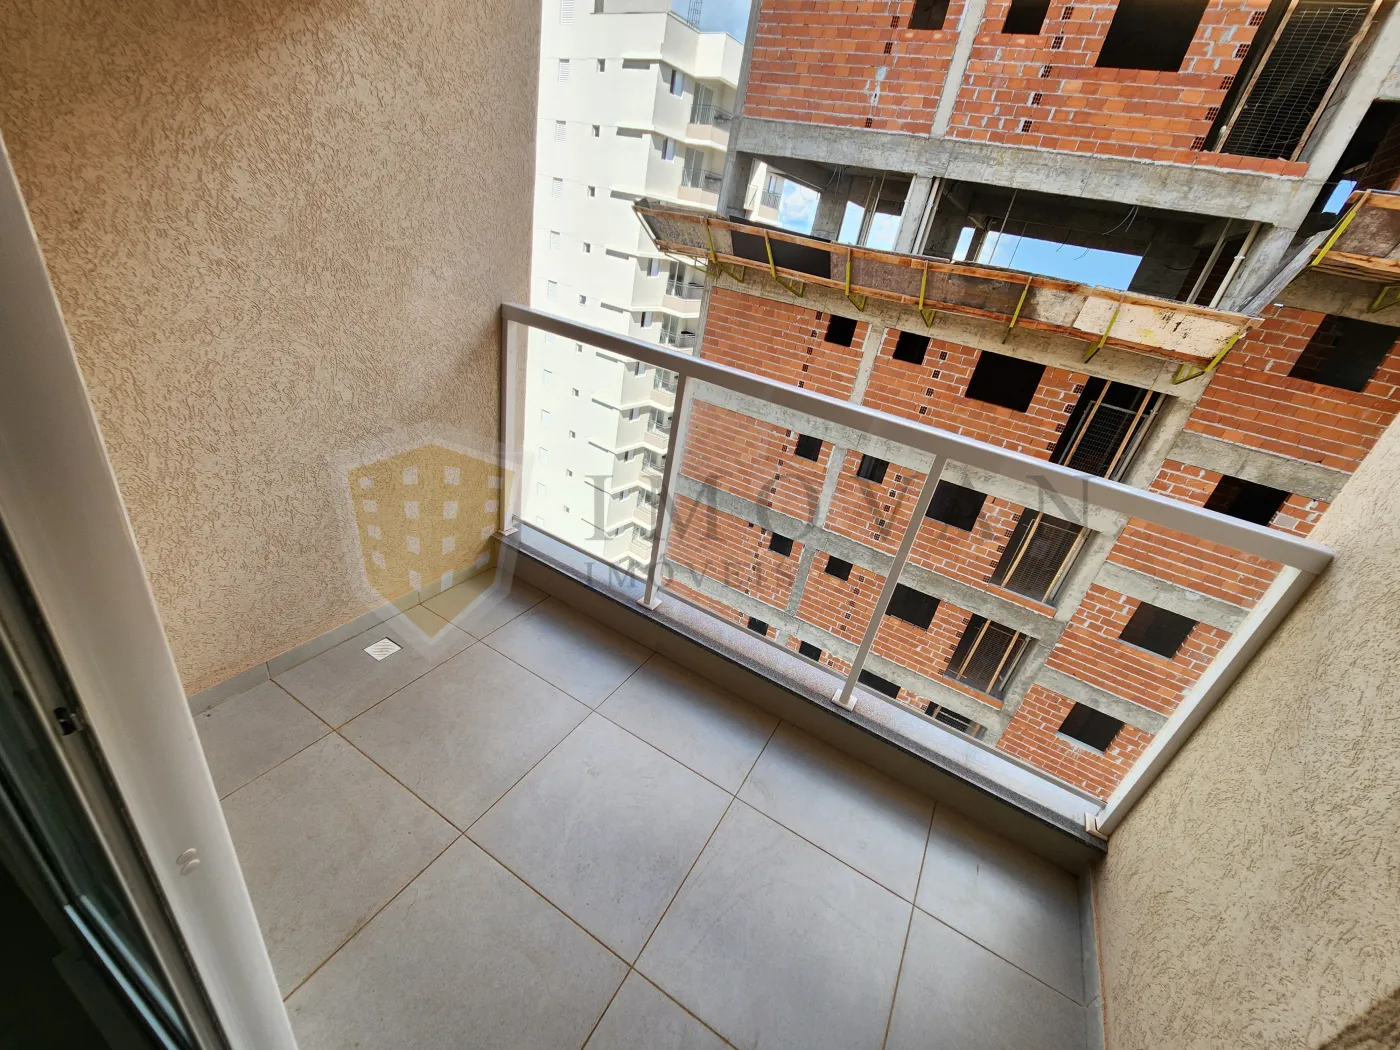 Comprar Apartamento / Padrão em Ribeirão Preto R$ 340.000,00 - Foto 15